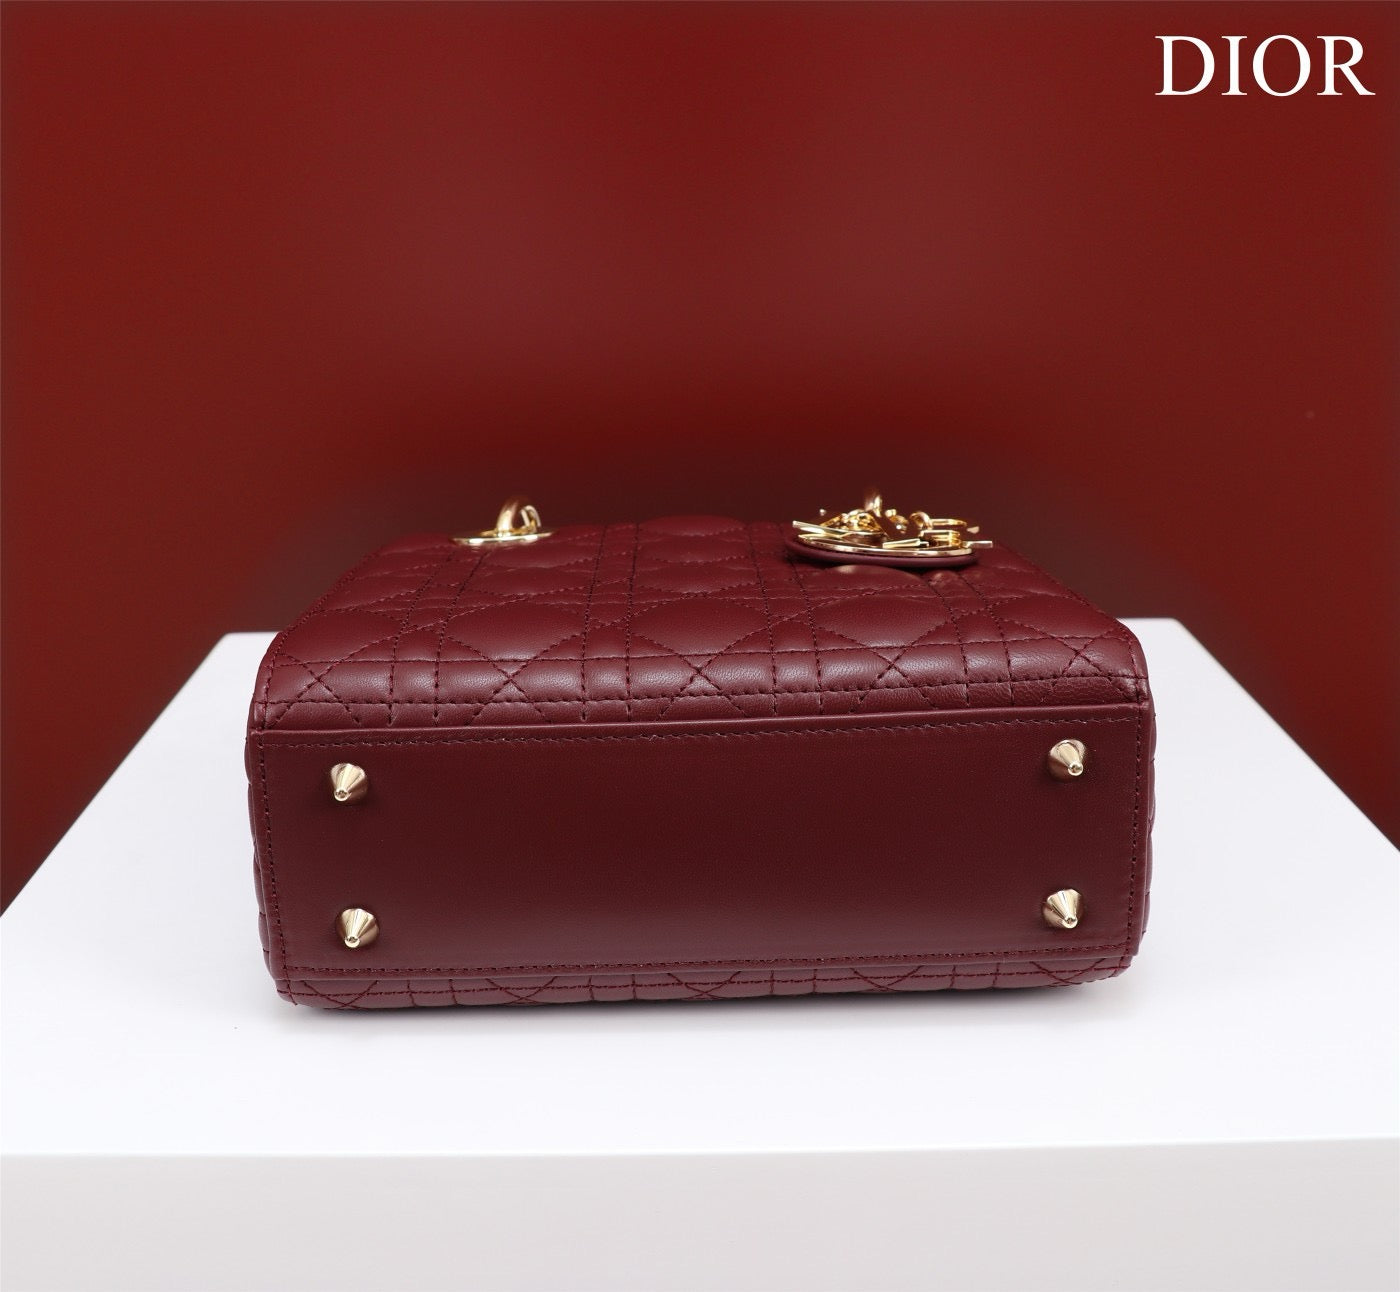 Small Lady Dior My ABCDior Bag Lamb Skin Maroon - High Grade